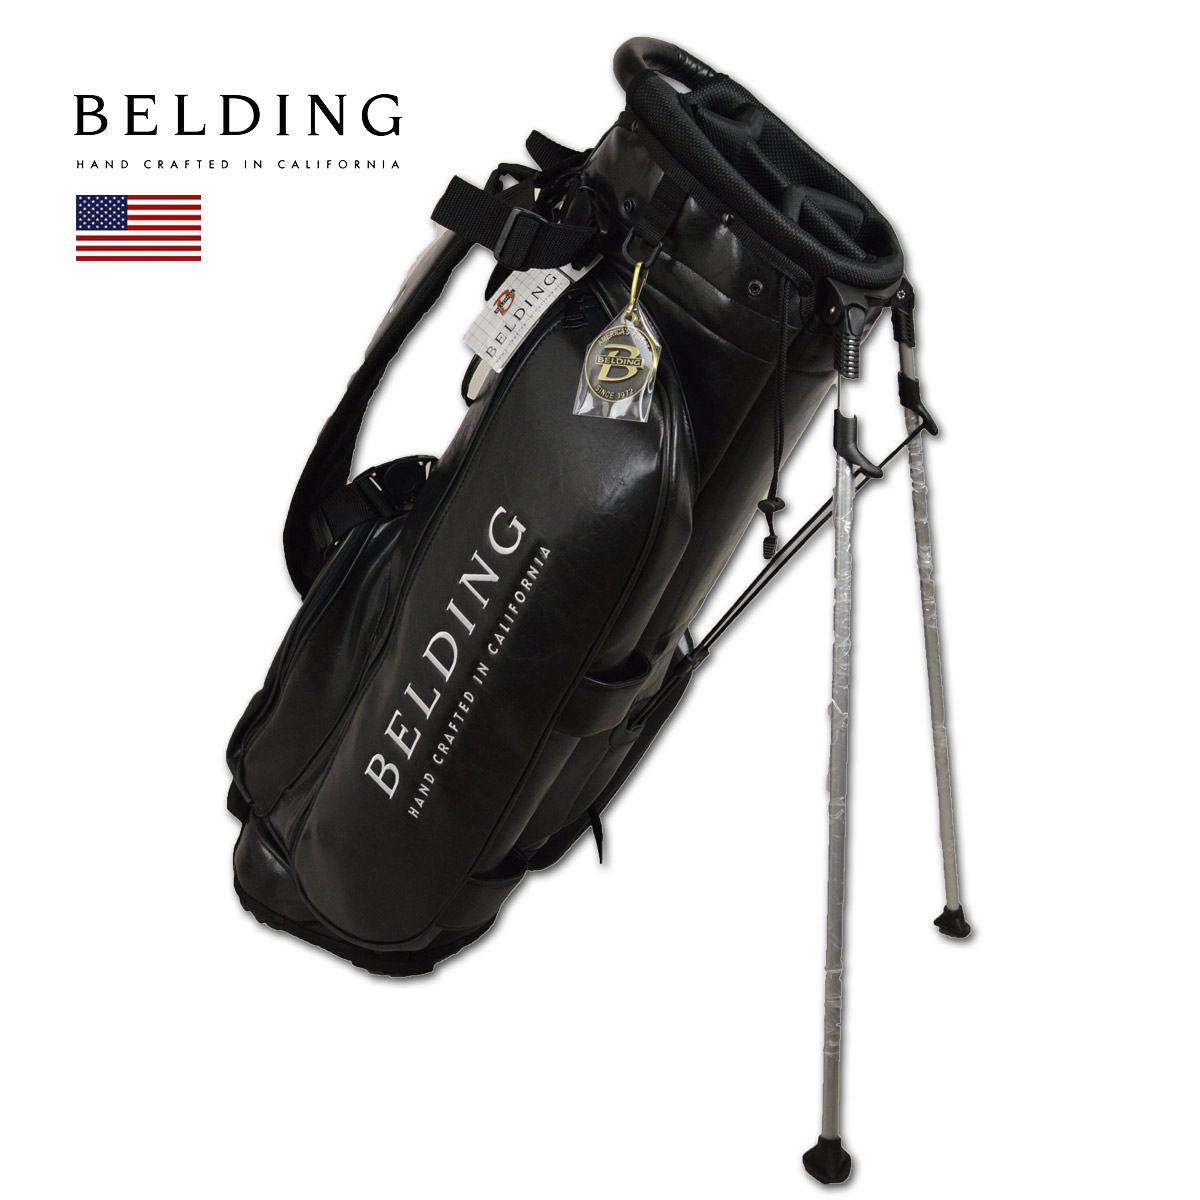 Belding キャディバッグ メンズ 黒 スタンド式 Hbcb あす楽 送料無料 ベルディング ゴルフ スタンド 8 5インチ 5分割 レア ブラック 人気商品 おしゃれ 限定 高級 2 0 スタンドバッグ Golf キャディーバッグ サンバード かっこいい ゴルフバッグ